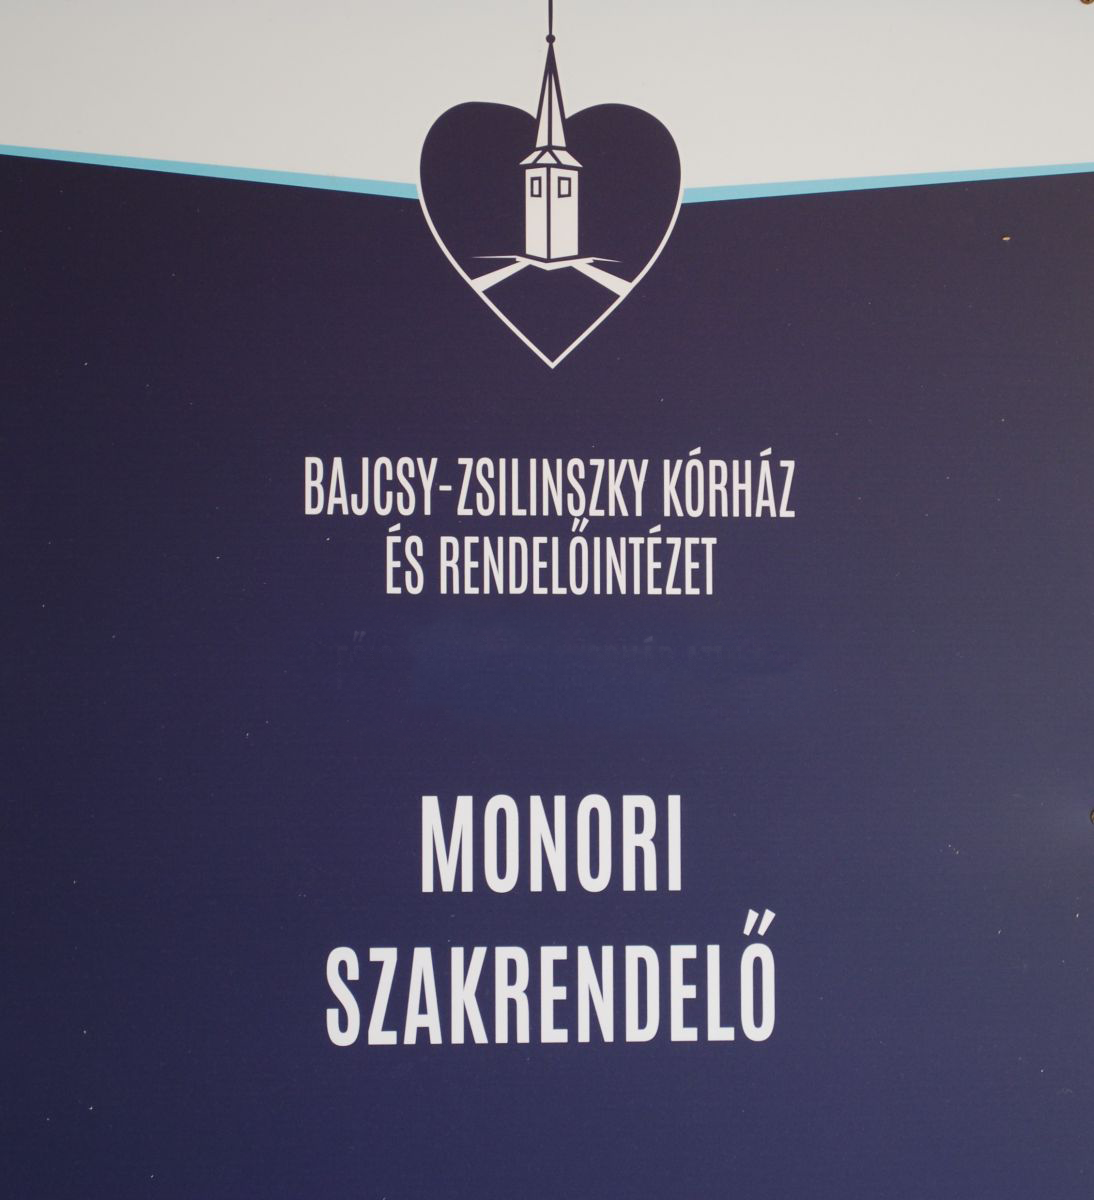 Rendelési idők július 1-től a Bajcsy-Zsilinszky Kórház és Rendelőintézet Monori Rendelőintézetében